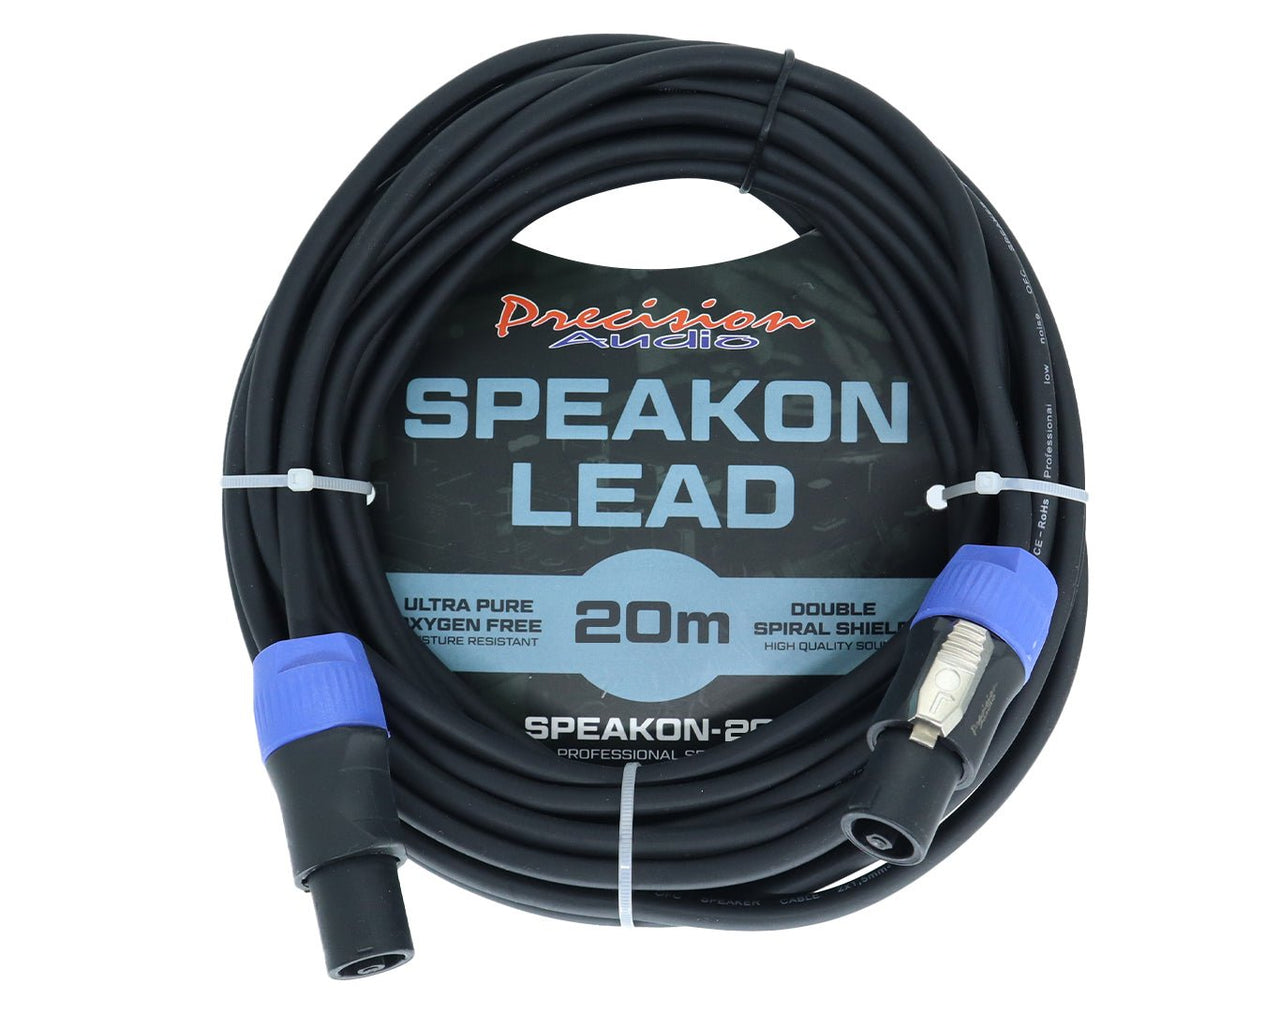 Precision Audio 5 Pack Speakon to Speakon Cable Amp Mixer Speaker 20m SPEAKON20 